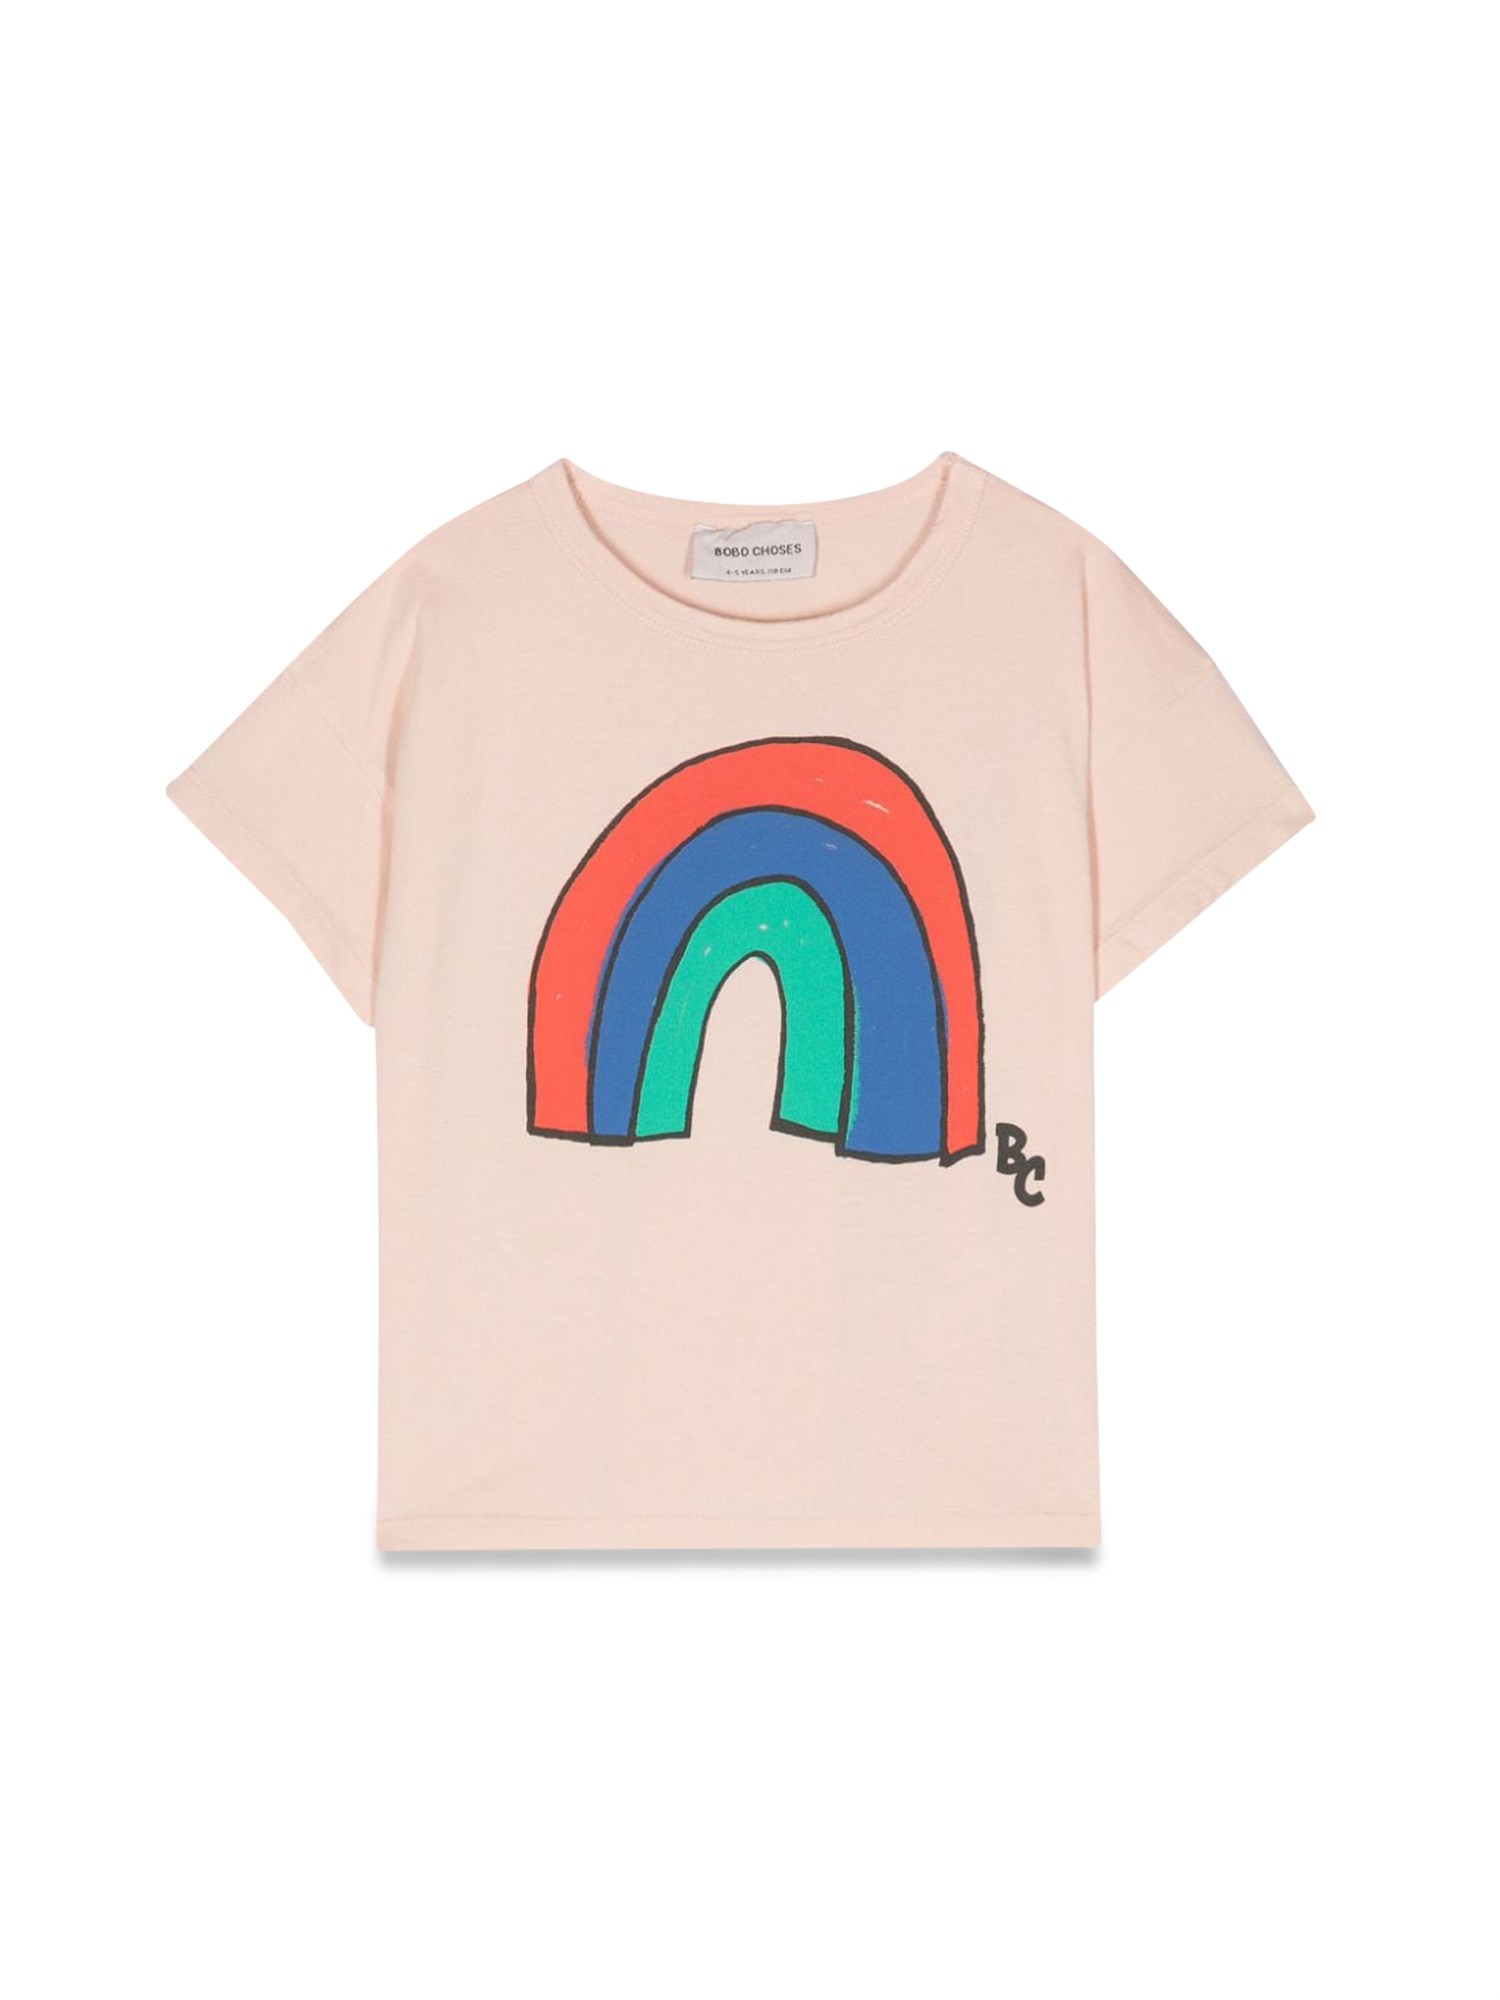 Bobo Choses bobo choses rainbow t-shirt